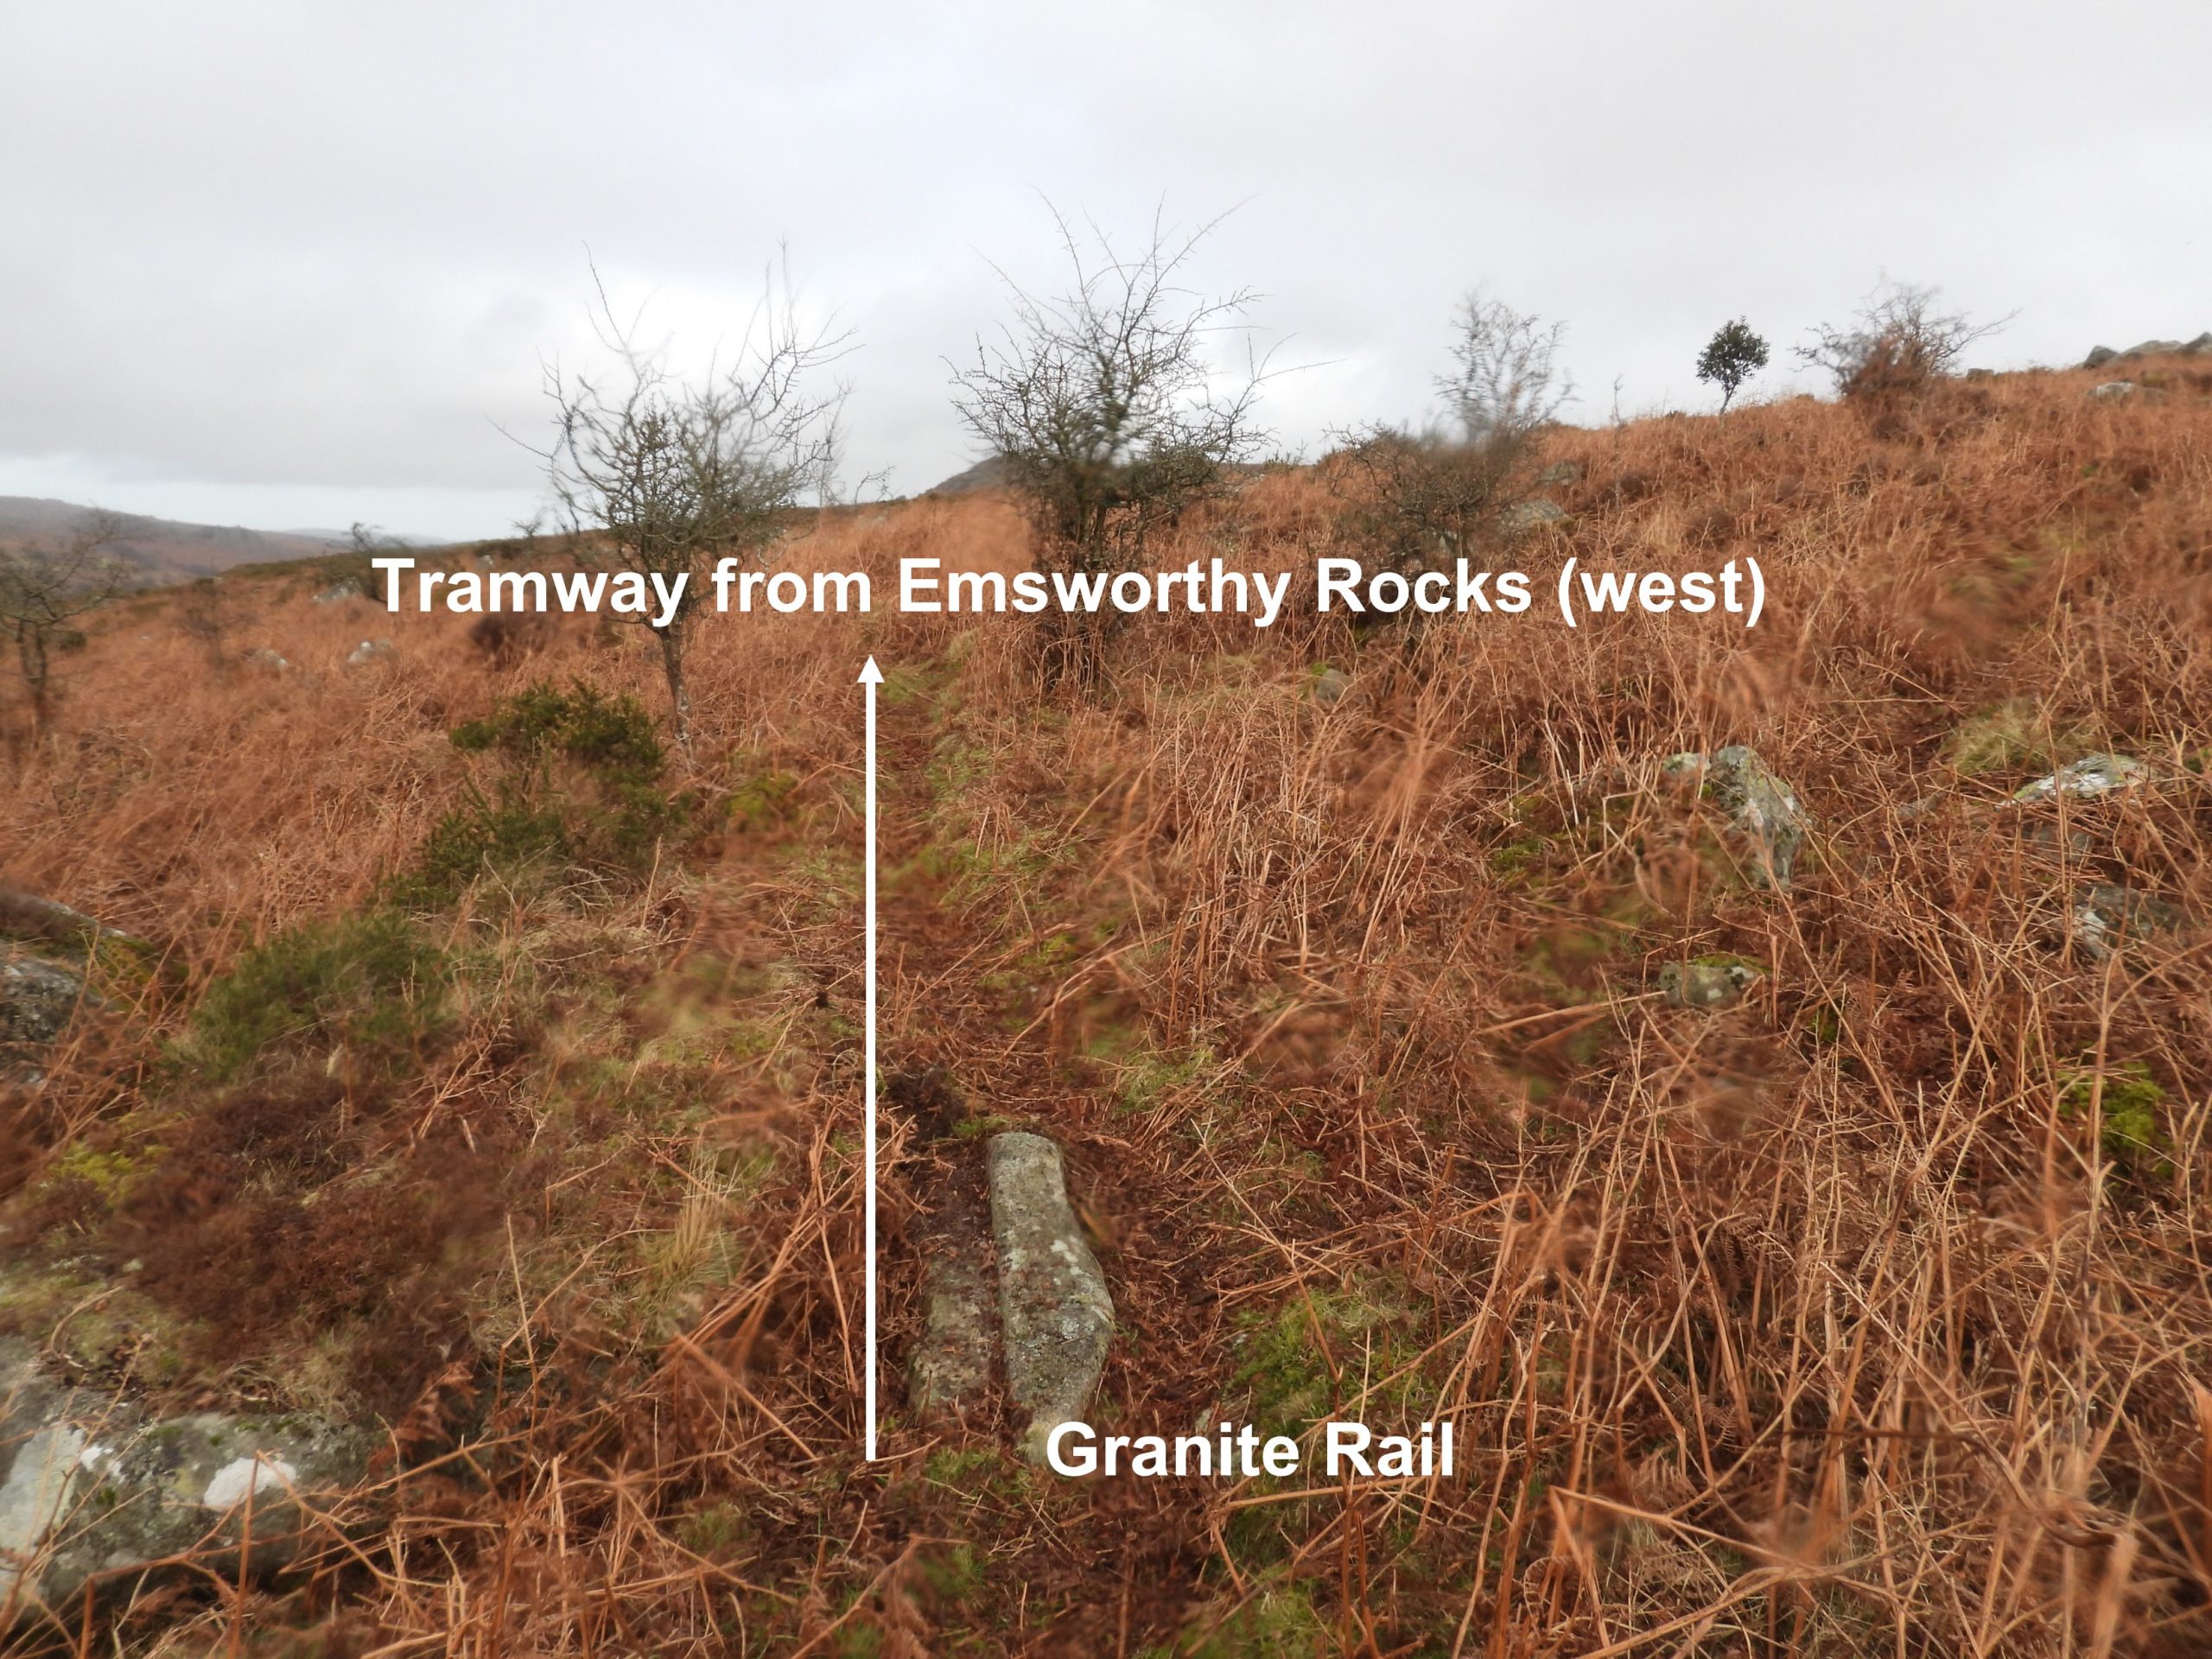 33c. Emsworthy Rocks West tramway